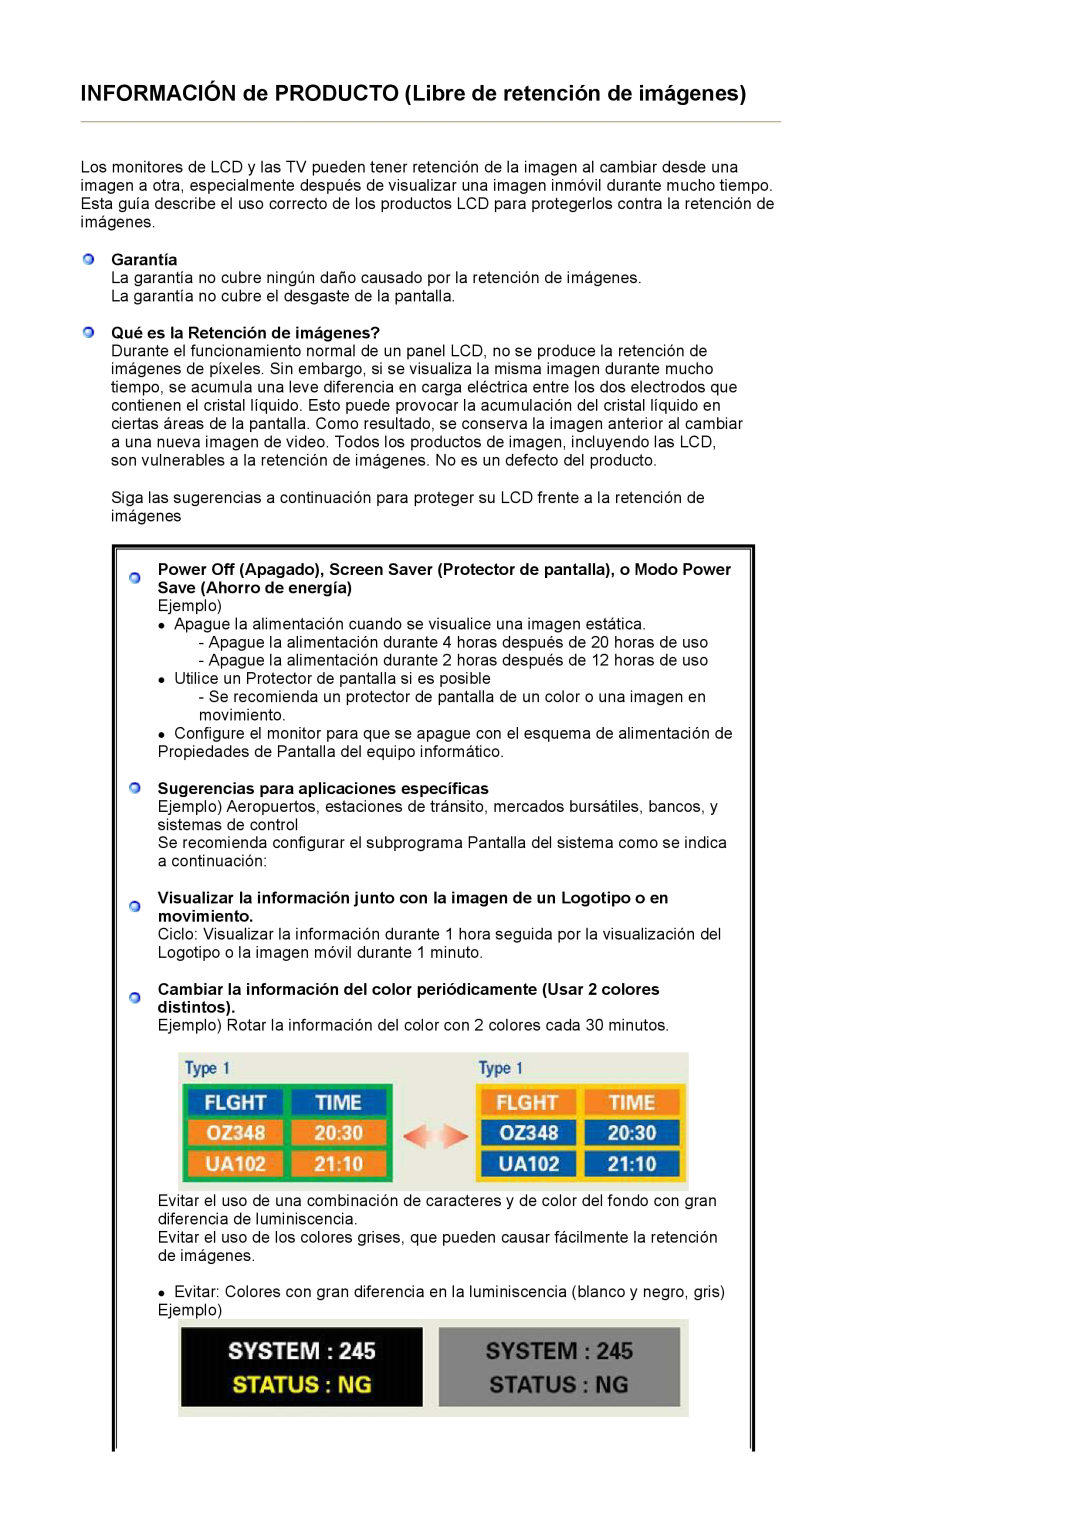 Samsung LS27HUBCBS/EDC manual Garantía, Qué es la Retención de imágenes?, Sugerencias para aplicaciones específicas 